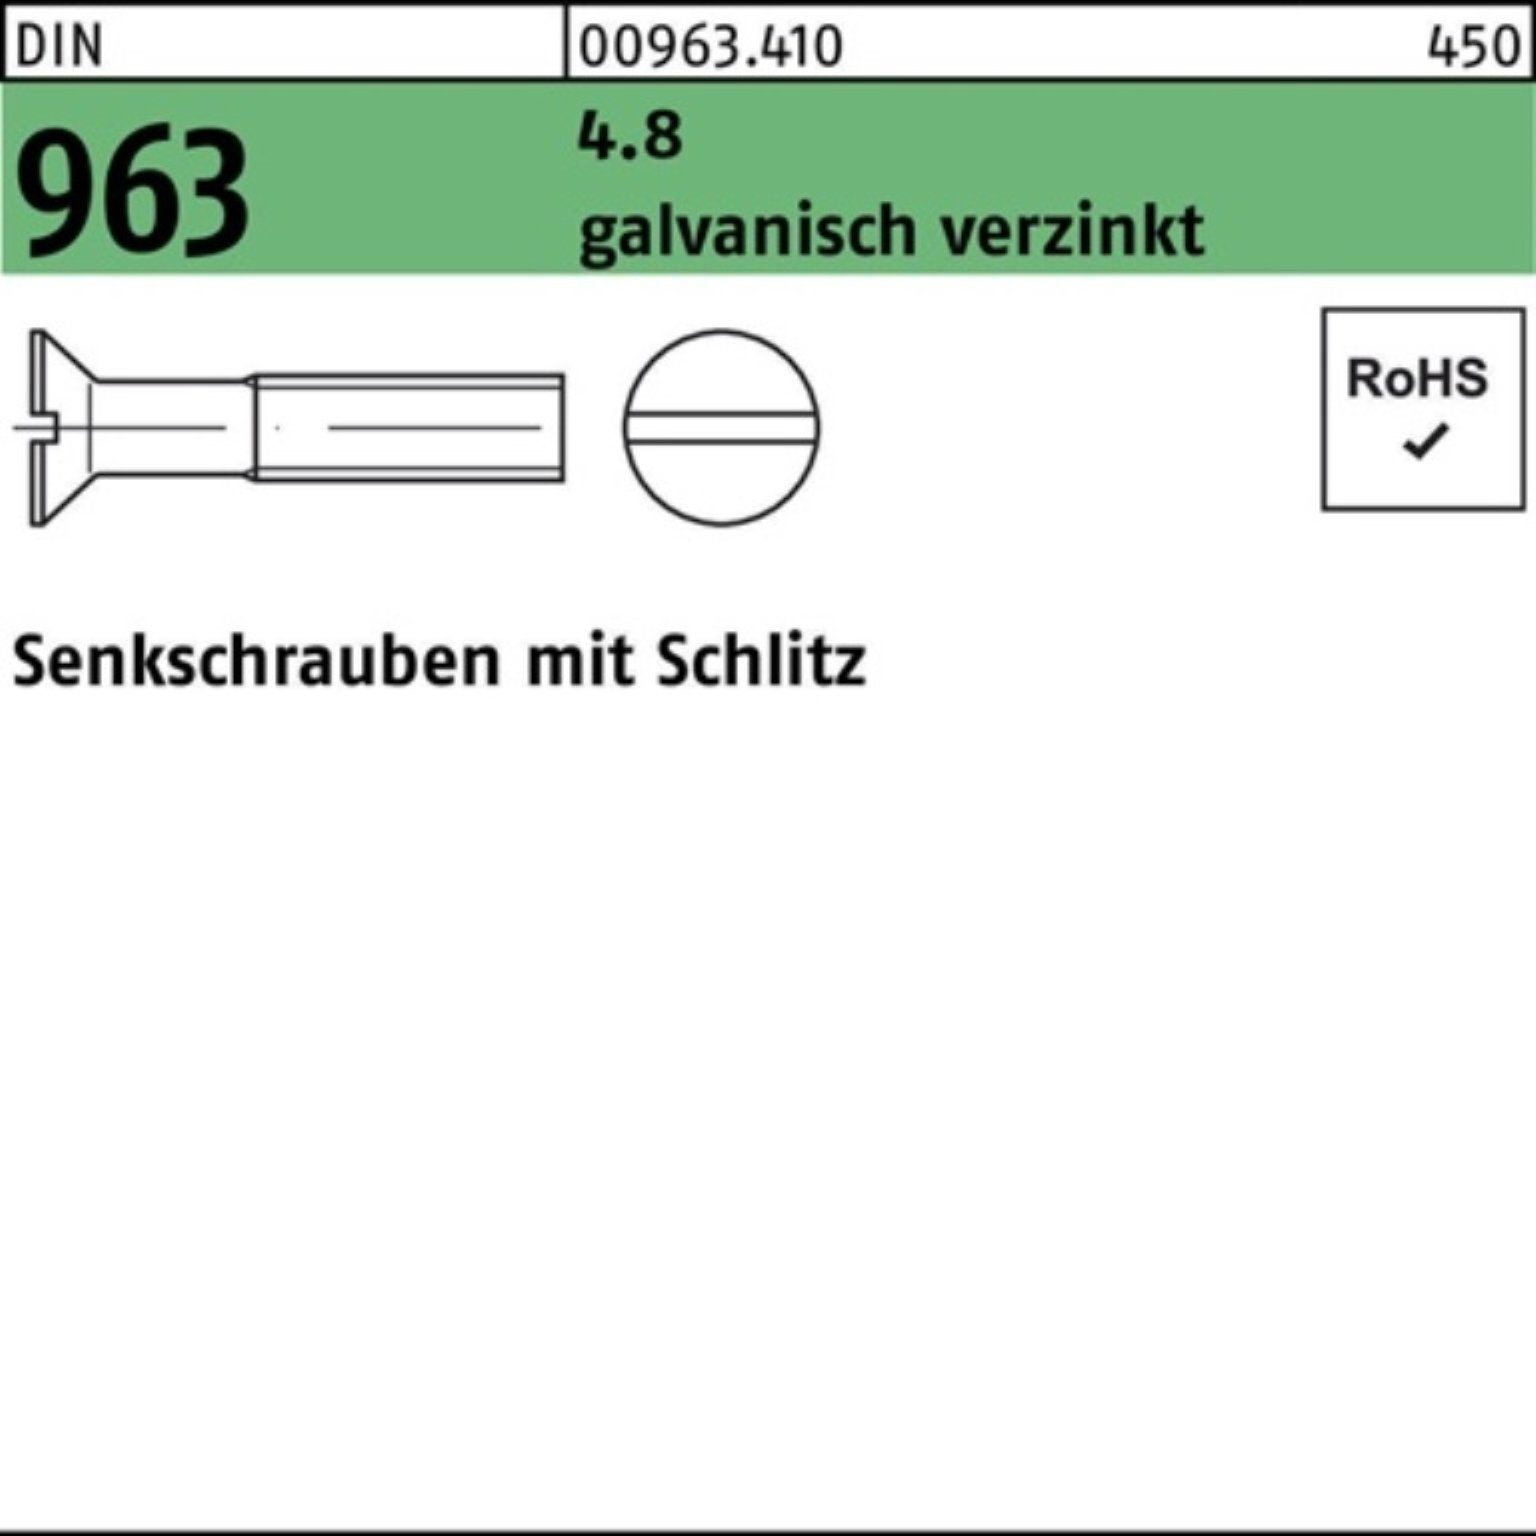 Reyher Senkschraube 1000er Pack DIN Senkschraube Schlitz M5x 963 galv.verz. St 30 1000 4.8